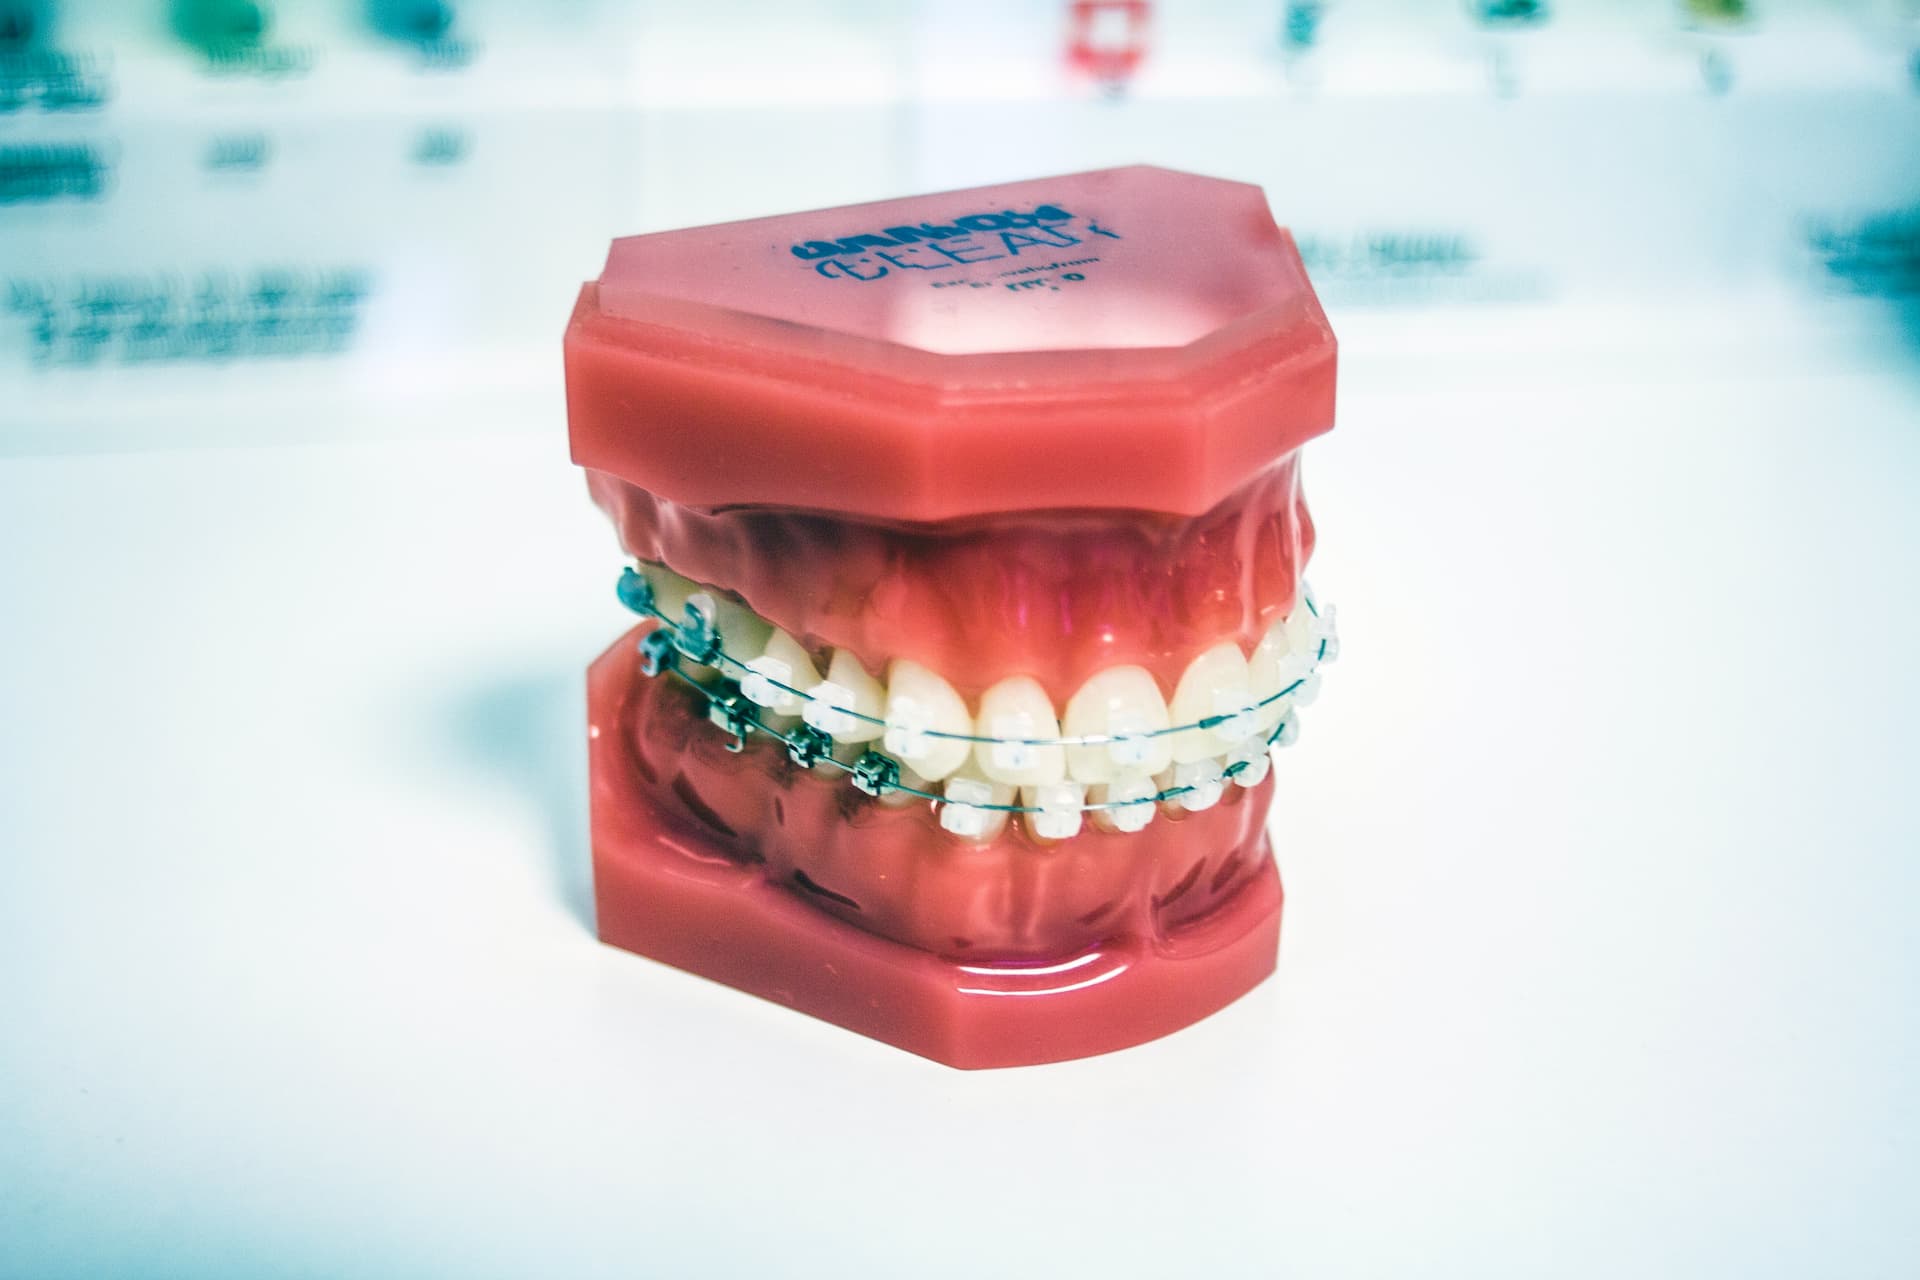 Co musisz wiedzieć przed pierwszą wizytą u ortodonty